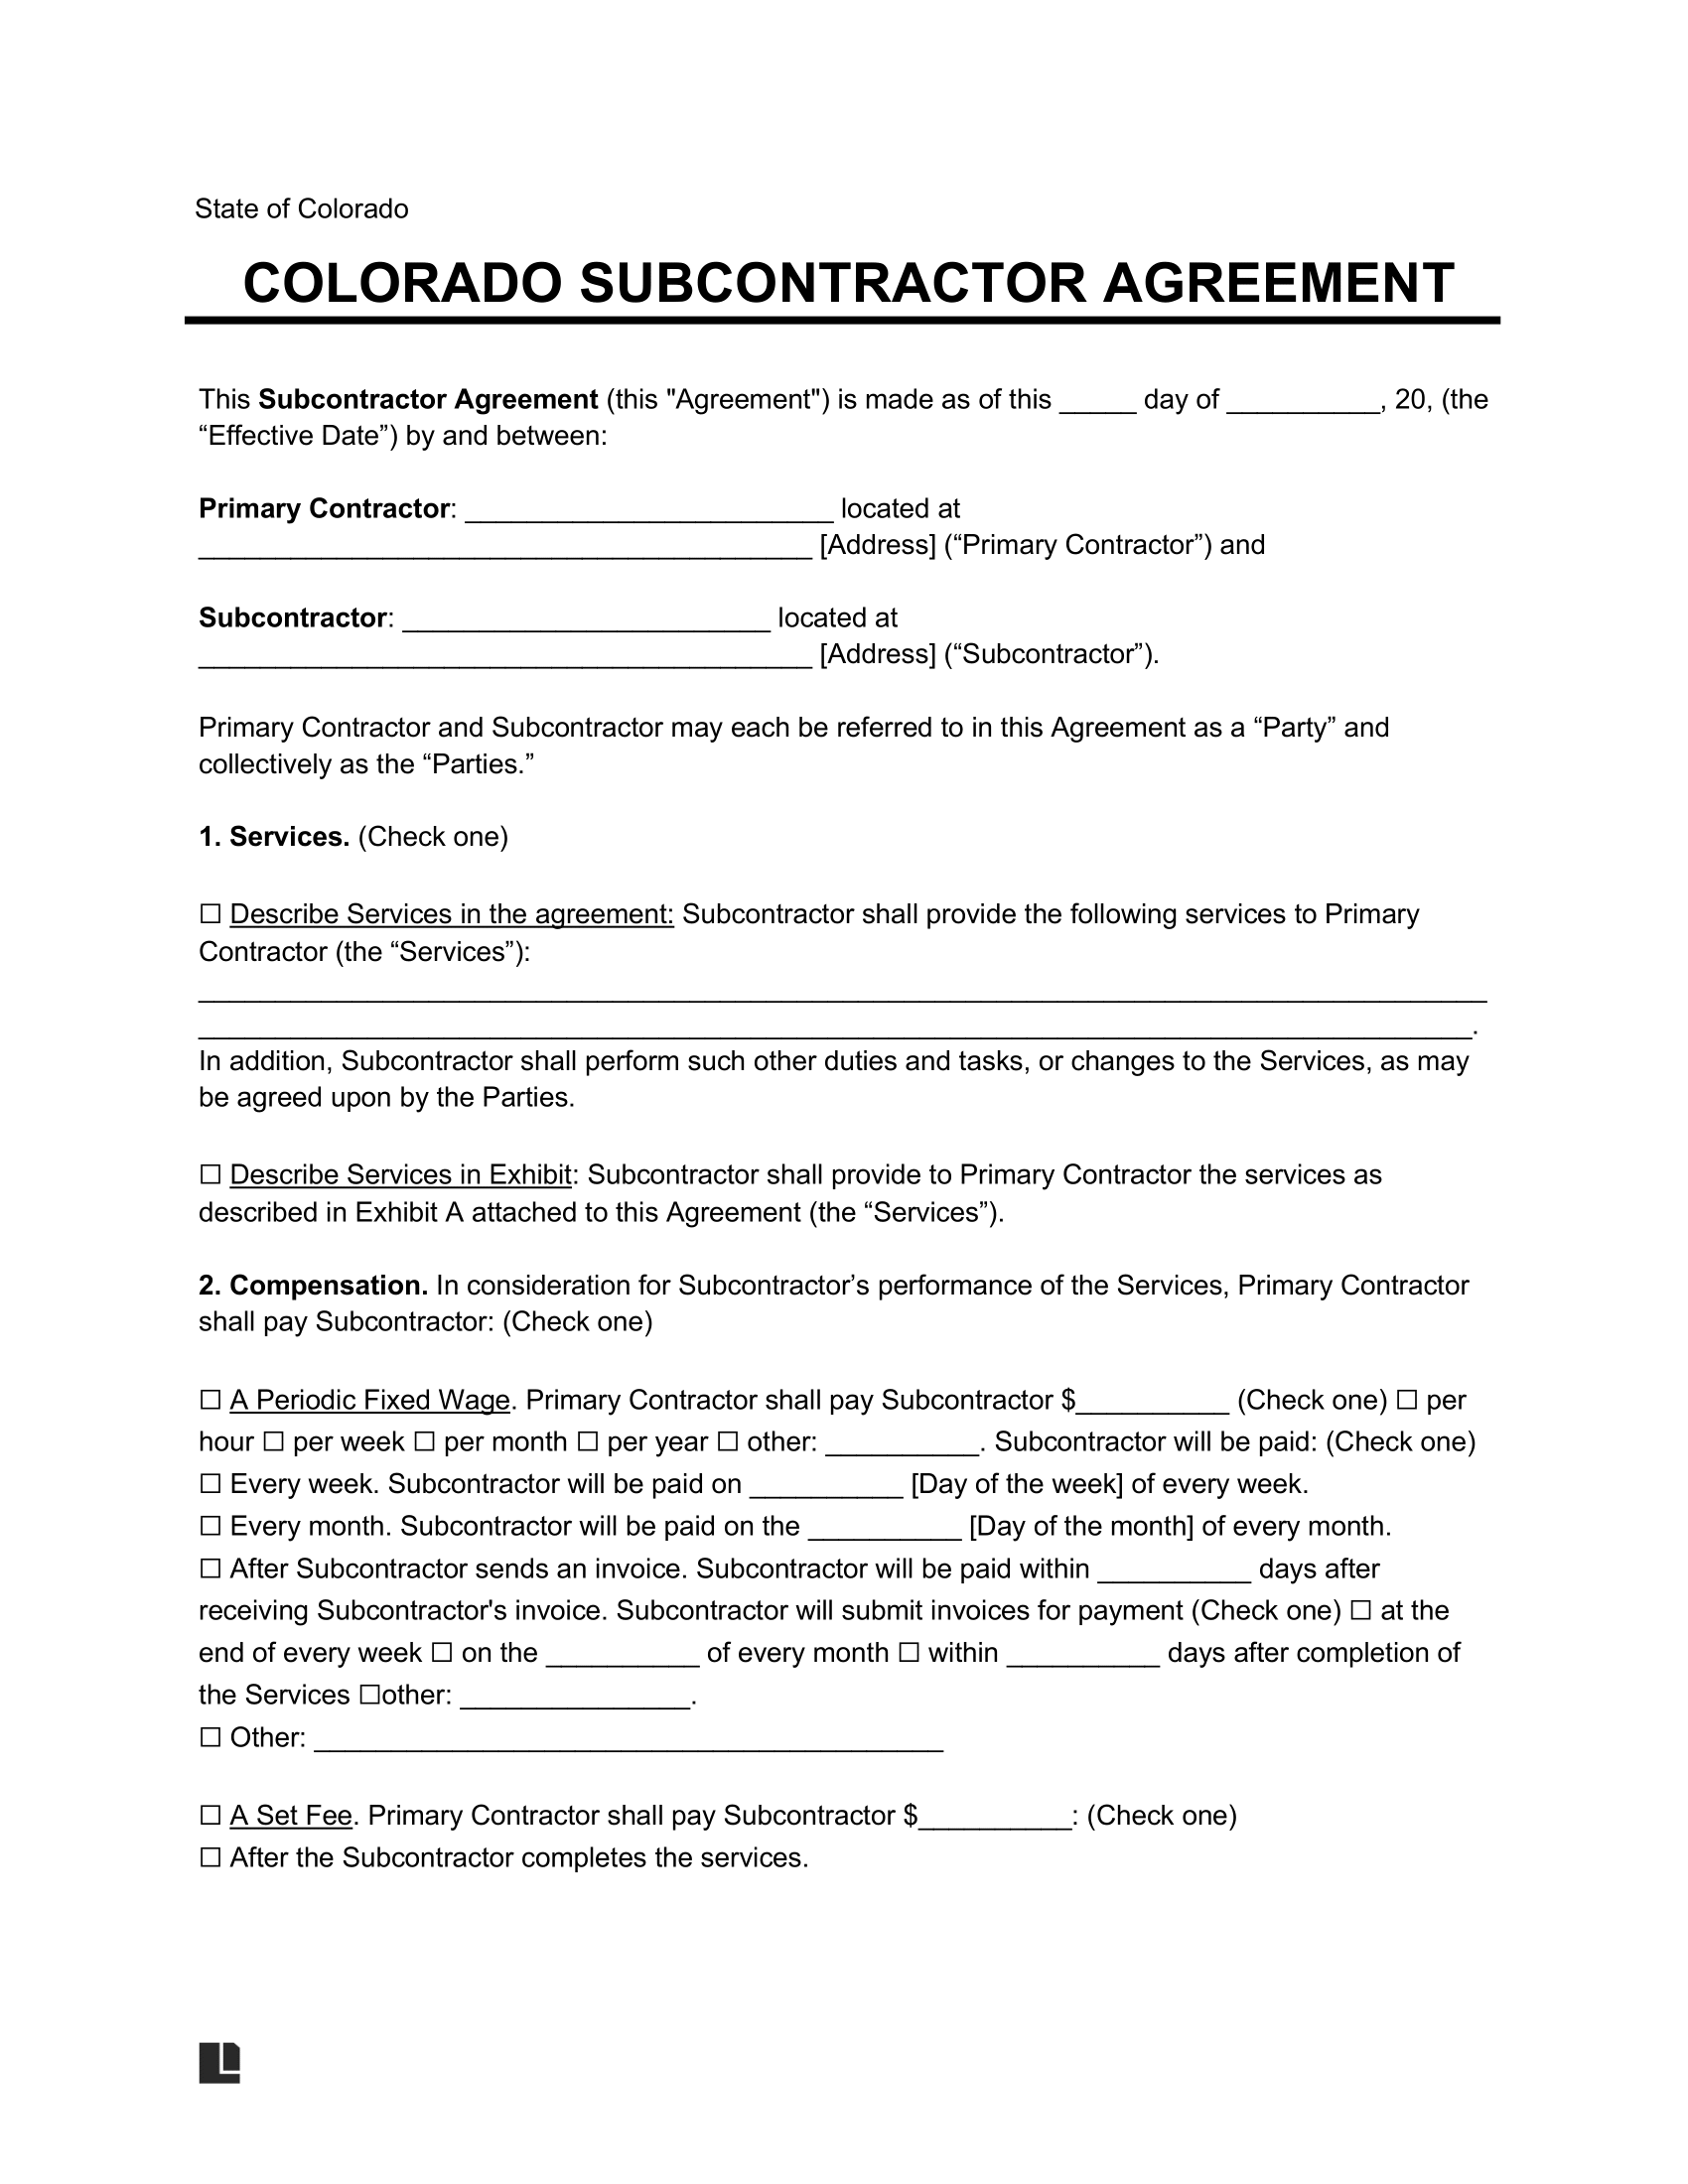 Colorado Subcontractor Agreement Sample